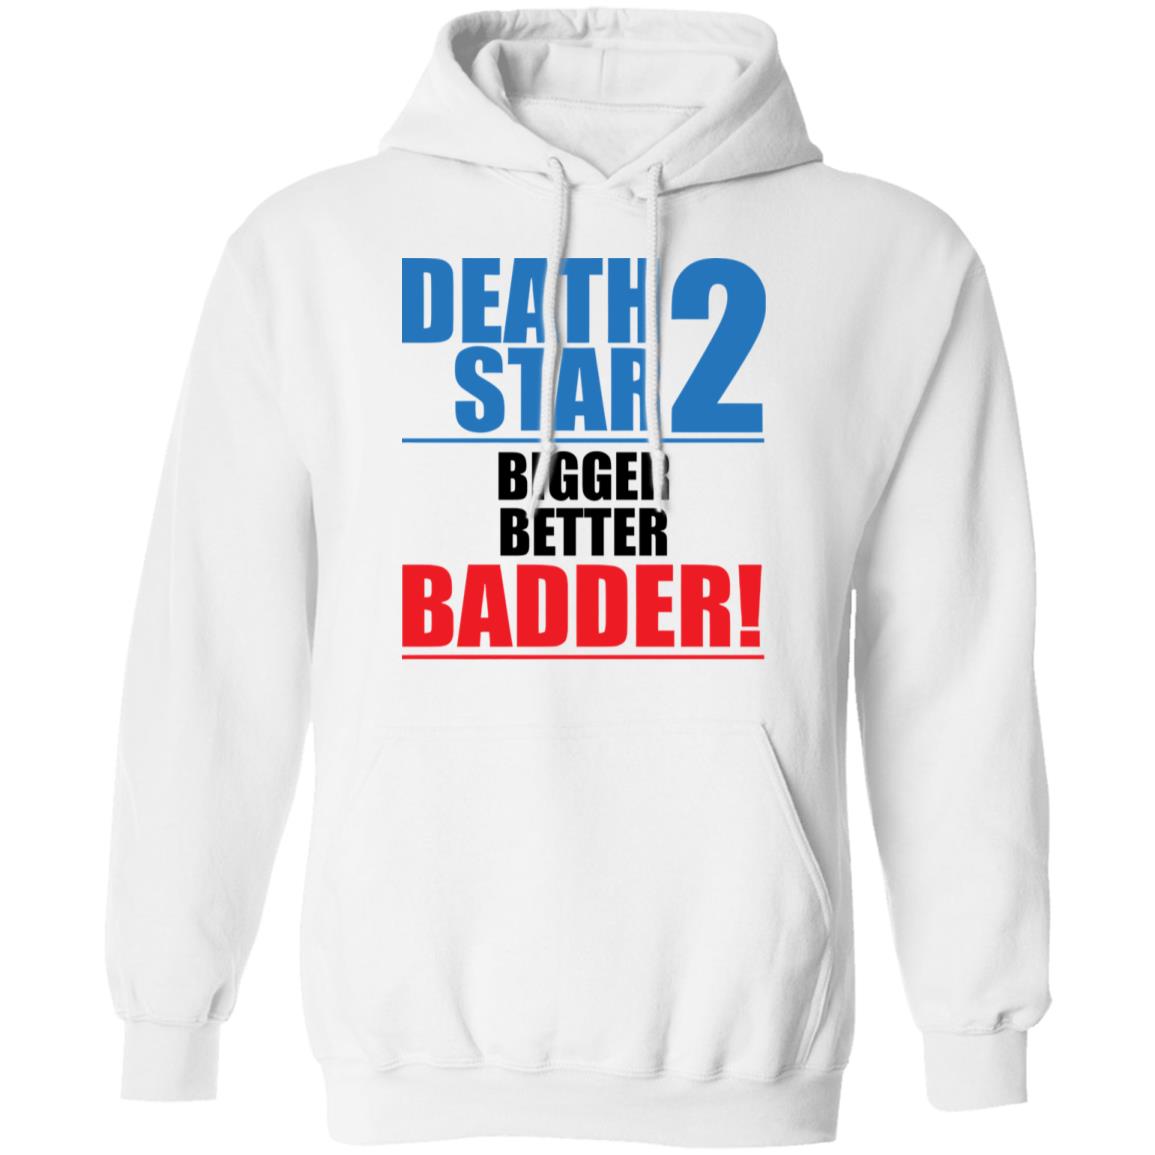 Death Star 2 Bigger Better Badder Shirt 1